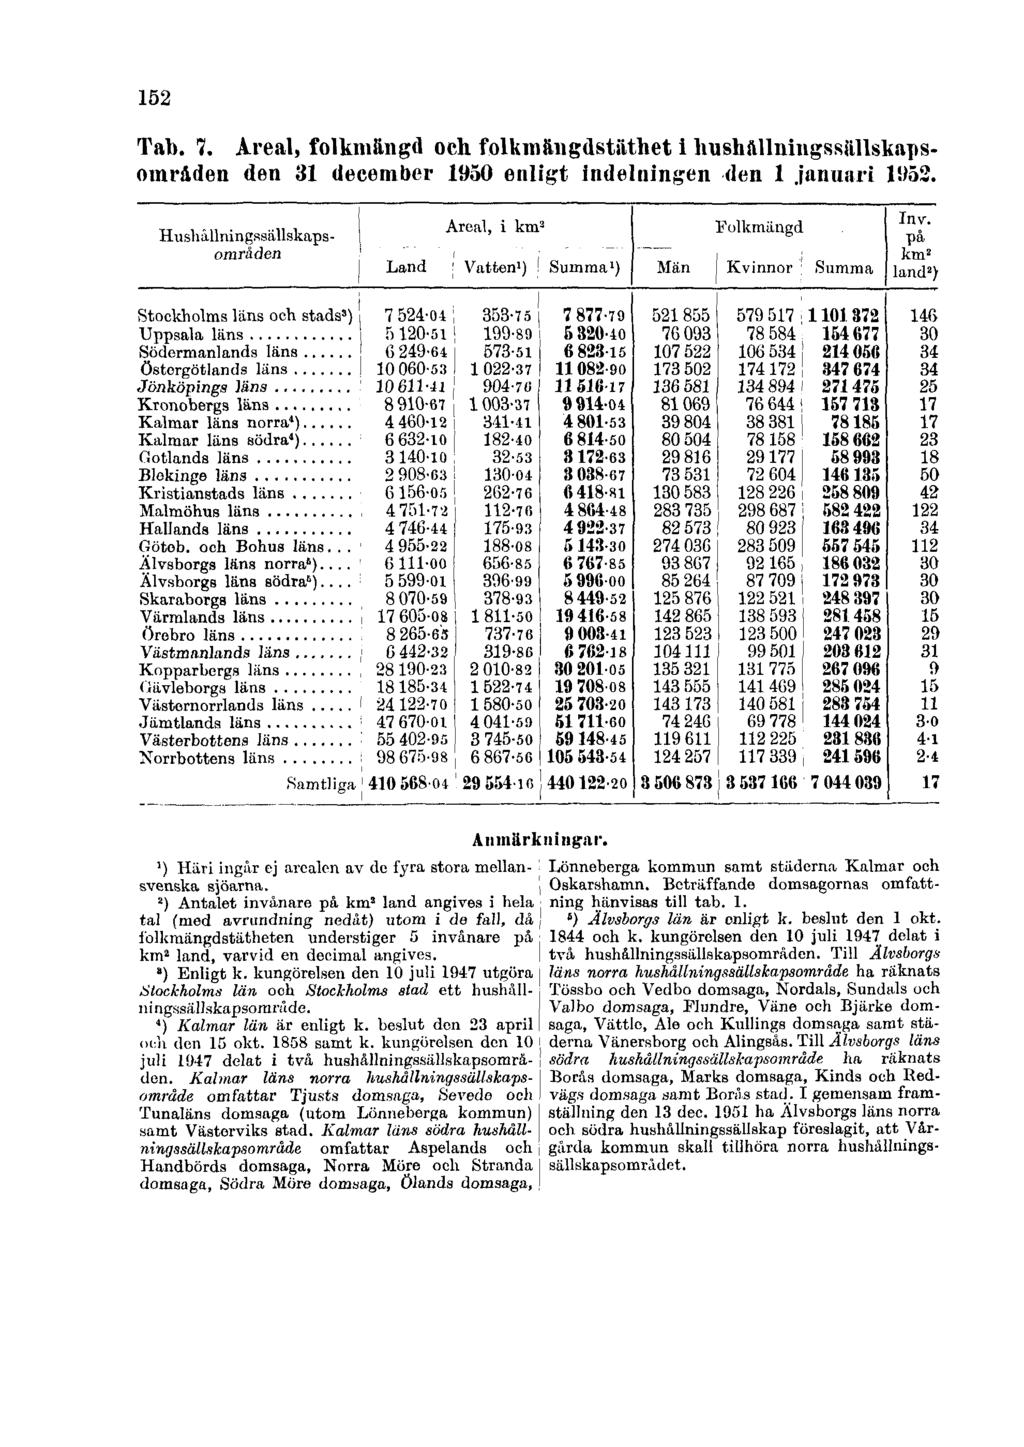 152 Tab. 7. Areal, folkmängd och folkmängdstäthet i hushållningssällskapsområden den 31 december 1950 enligt indelningen den 1 januari 1952. Anmärkningar.